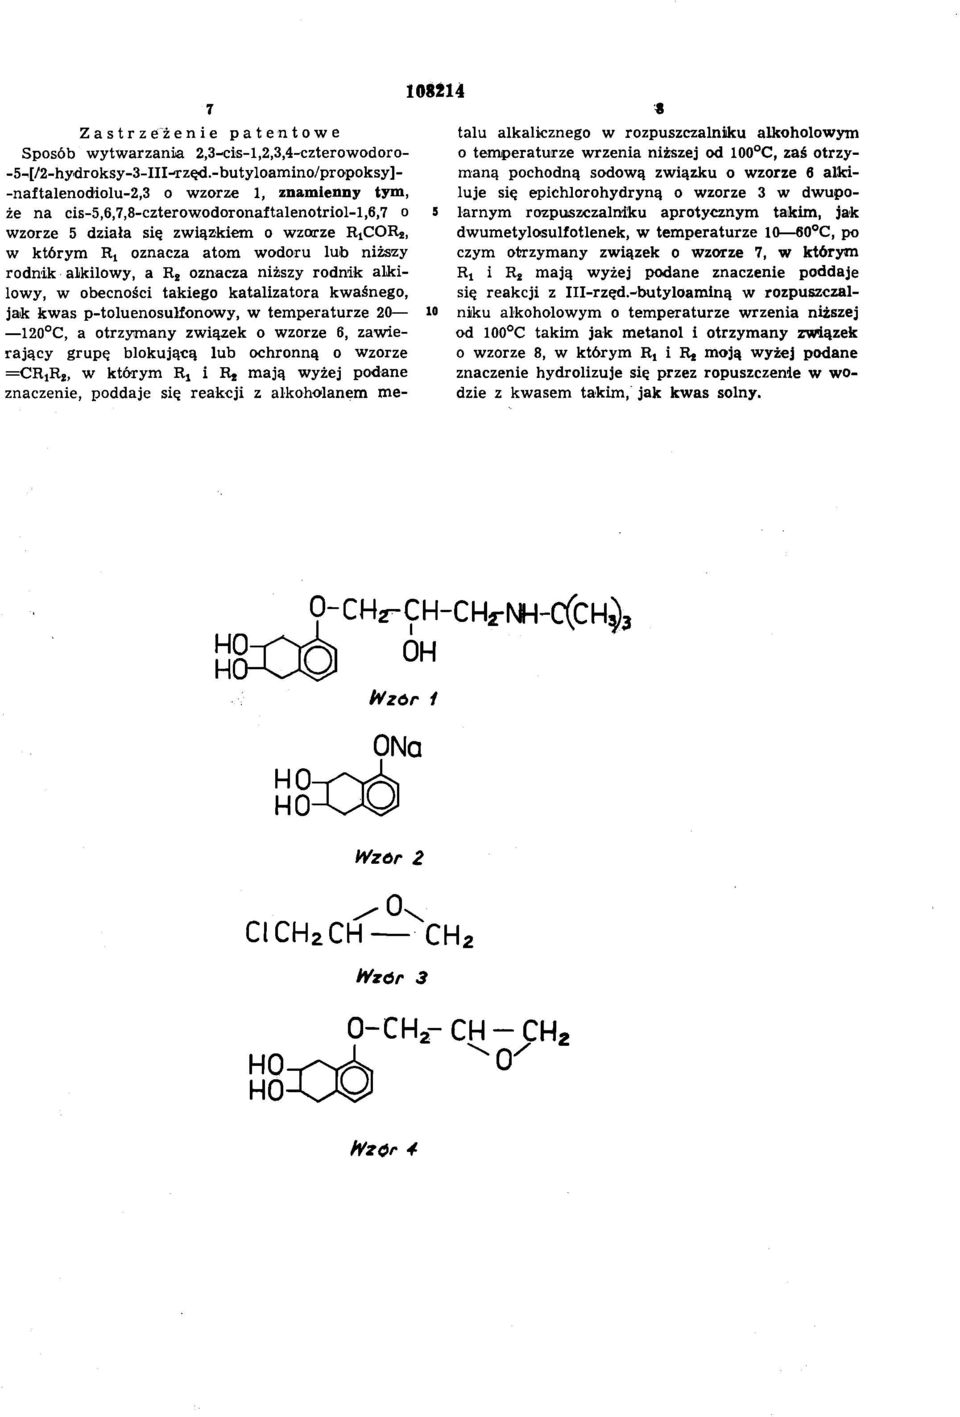 wodoru lub niższy rodnik alkilowy, a R2 oznacza niższy rodnik alki lowy, w obecności takiego katalizatora kwaśnego, jak kwas p-toluenosulfonowy, w temperaturze 20 120 C, a otrzymany związek o wzorze